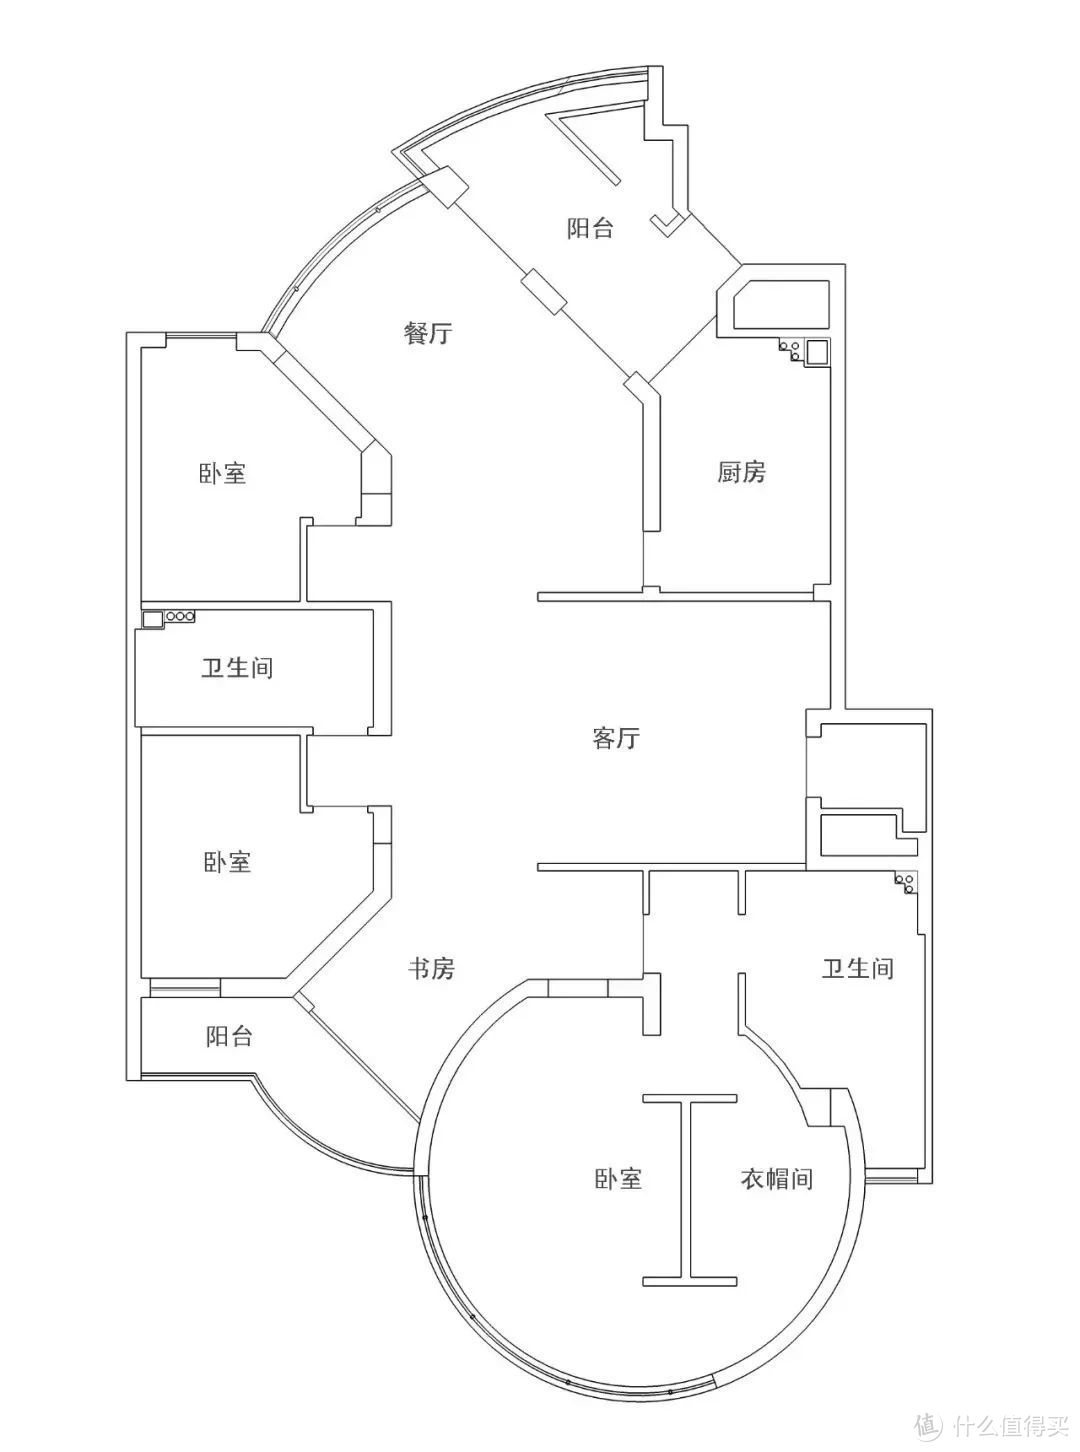 全世界最爱“造园子”的江浙人…终于把园林搬普通公寓楼里了！